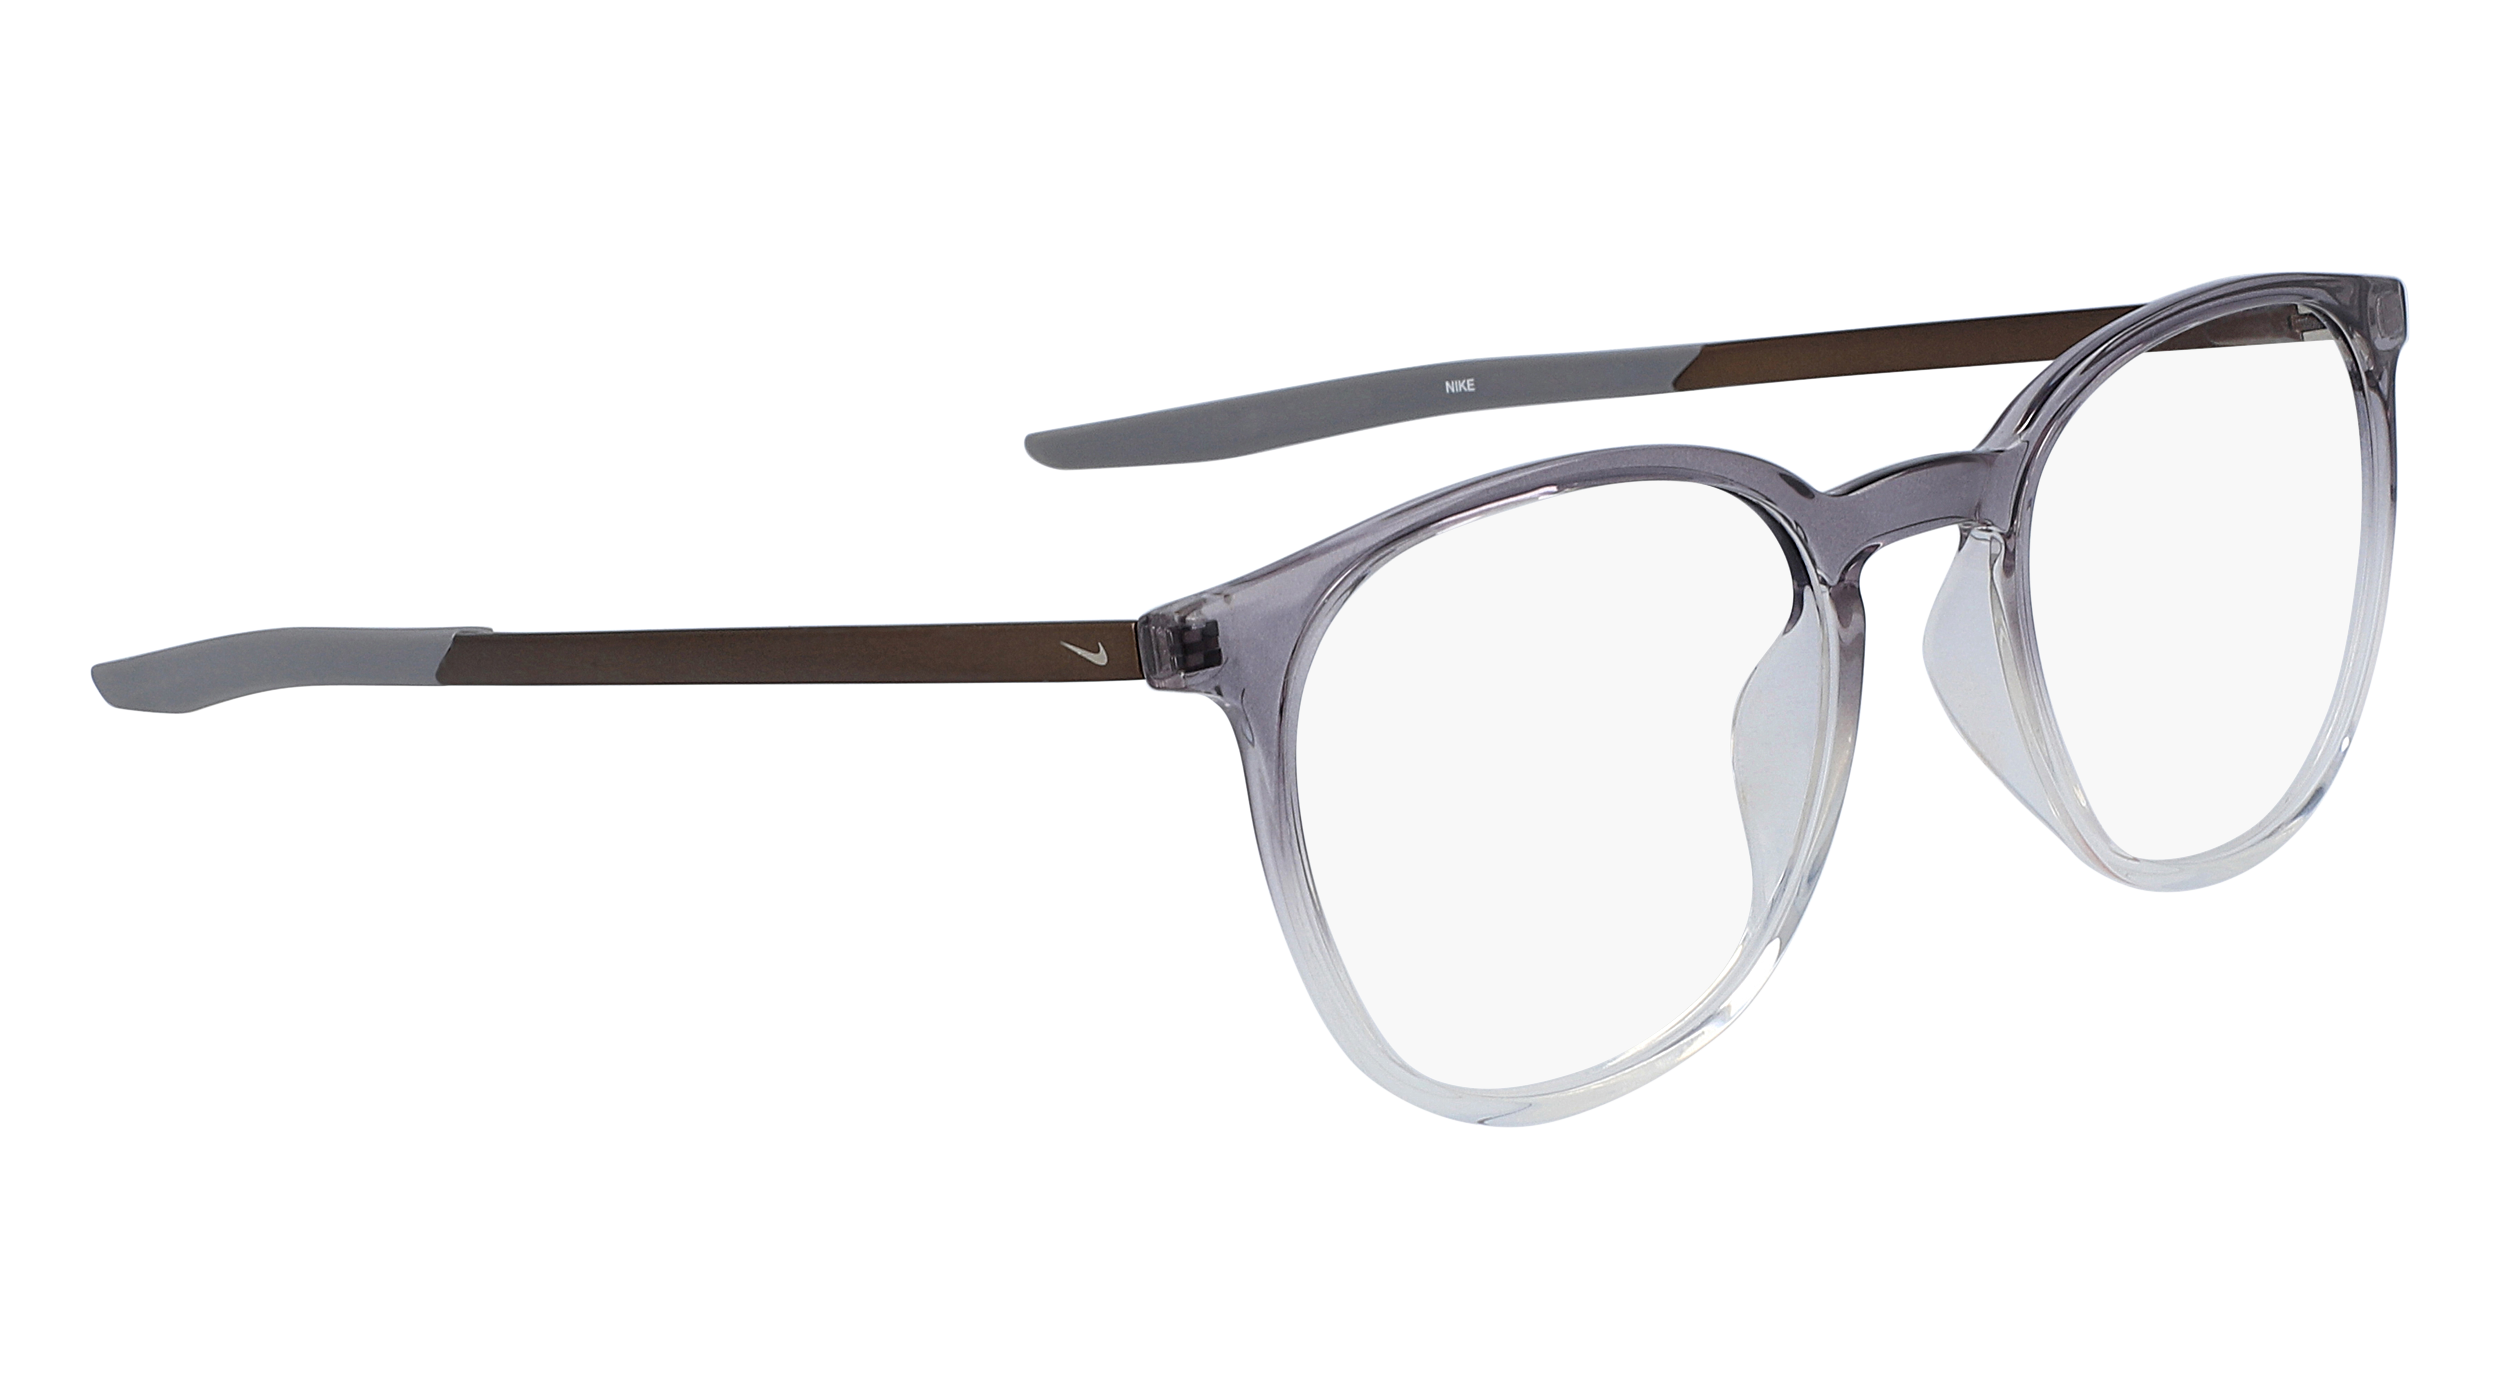 Paire de lunettes de vue Nike 7280 couleur gris - Côté droit - Doyle